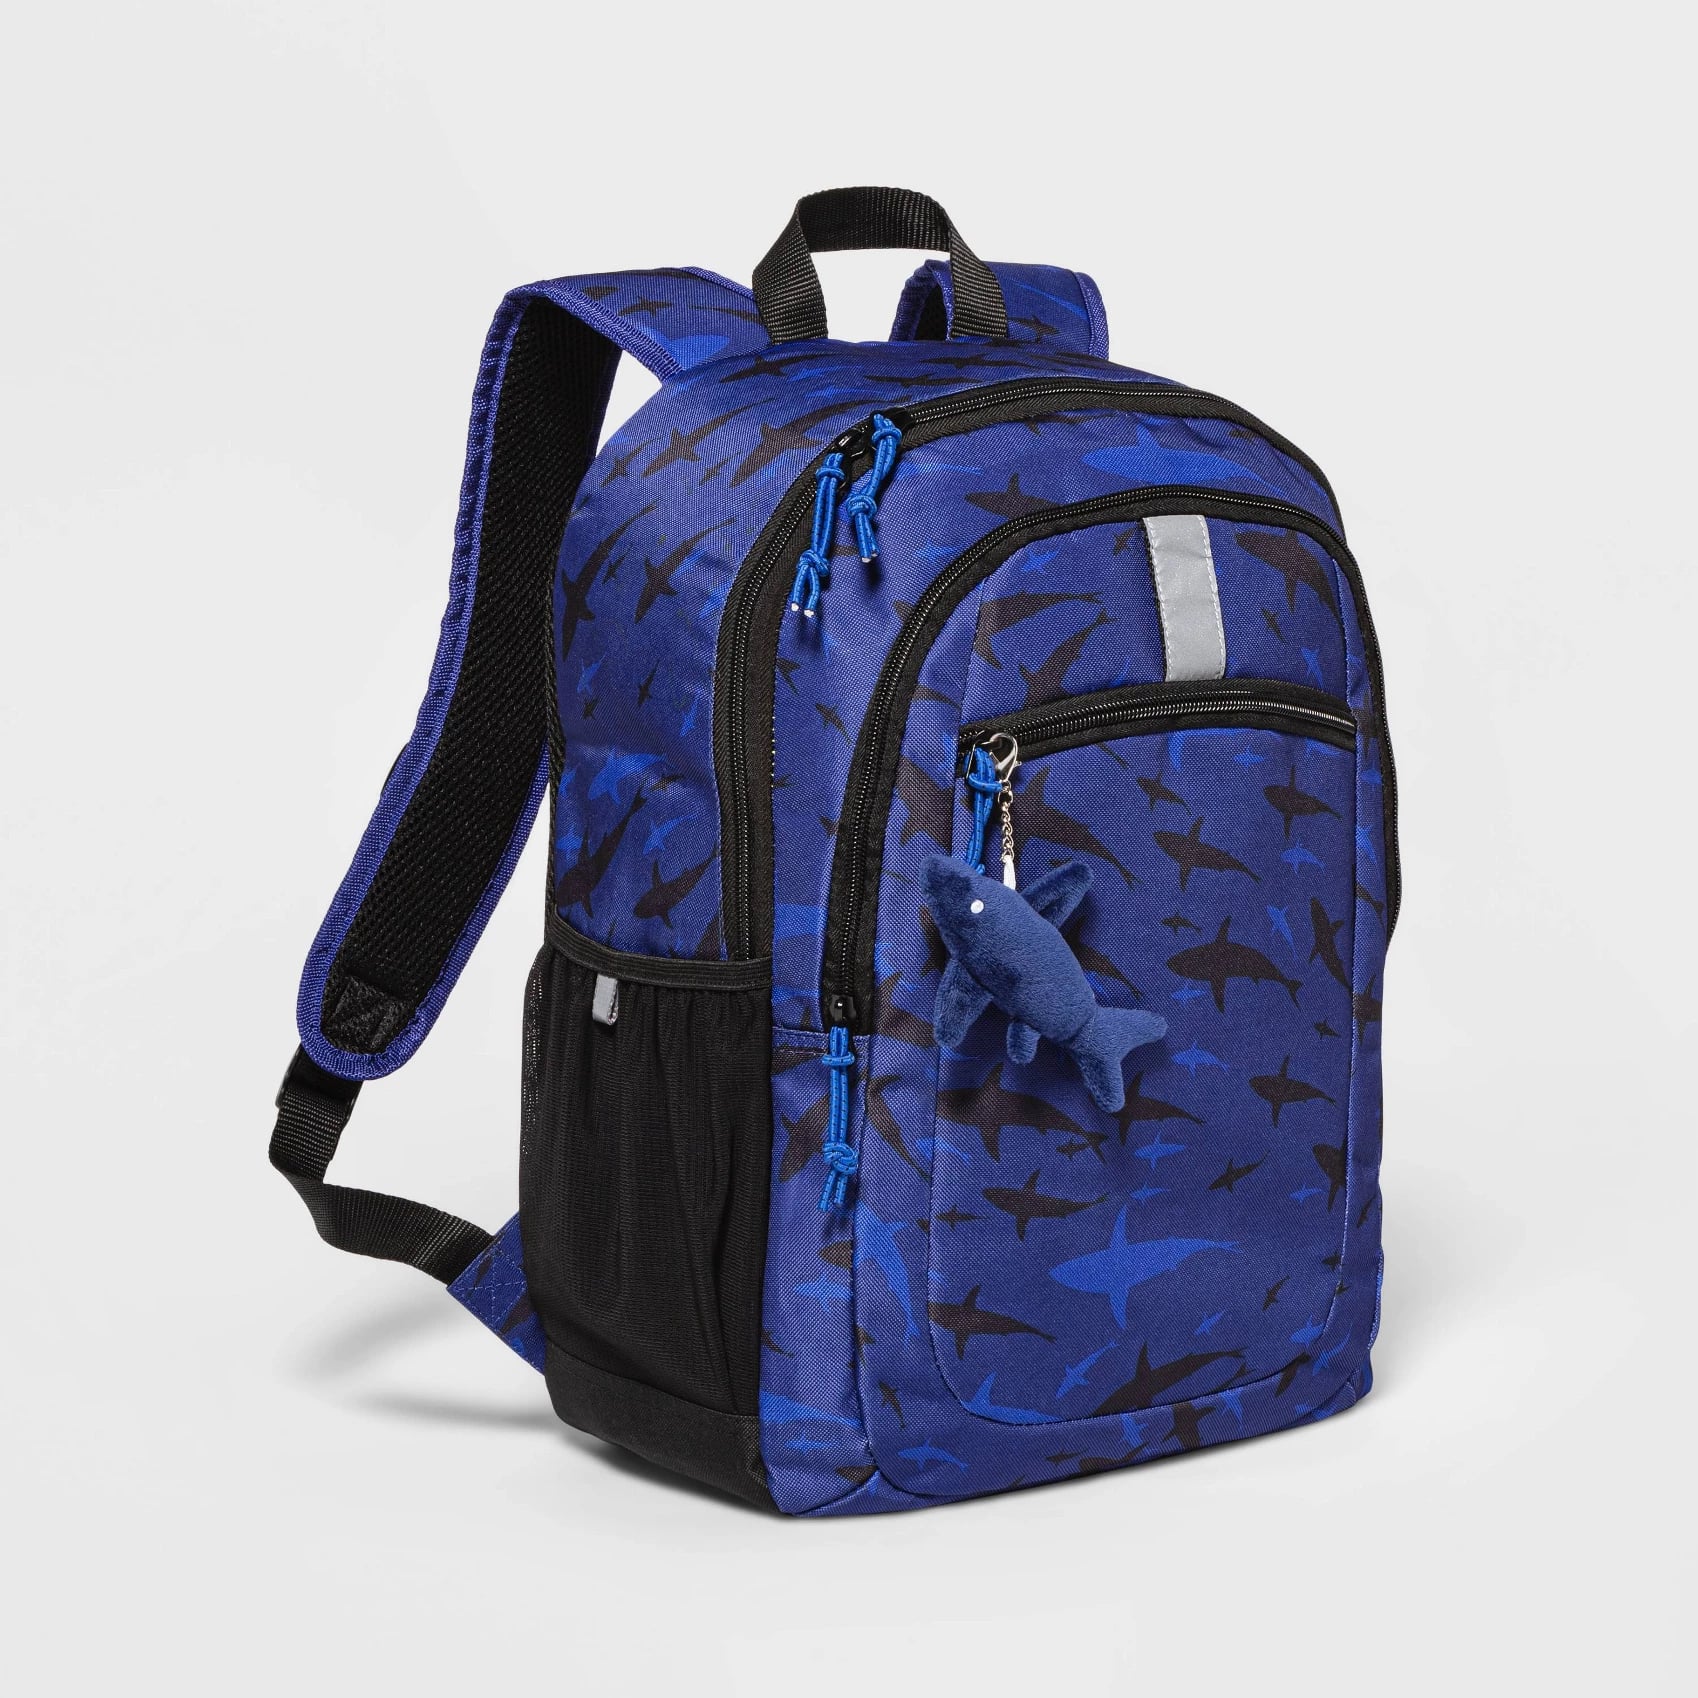 Sangecjl Skillet Backpack School Laptop Backpack College Youth School Bag Unisex 17 Inch Bookbag 